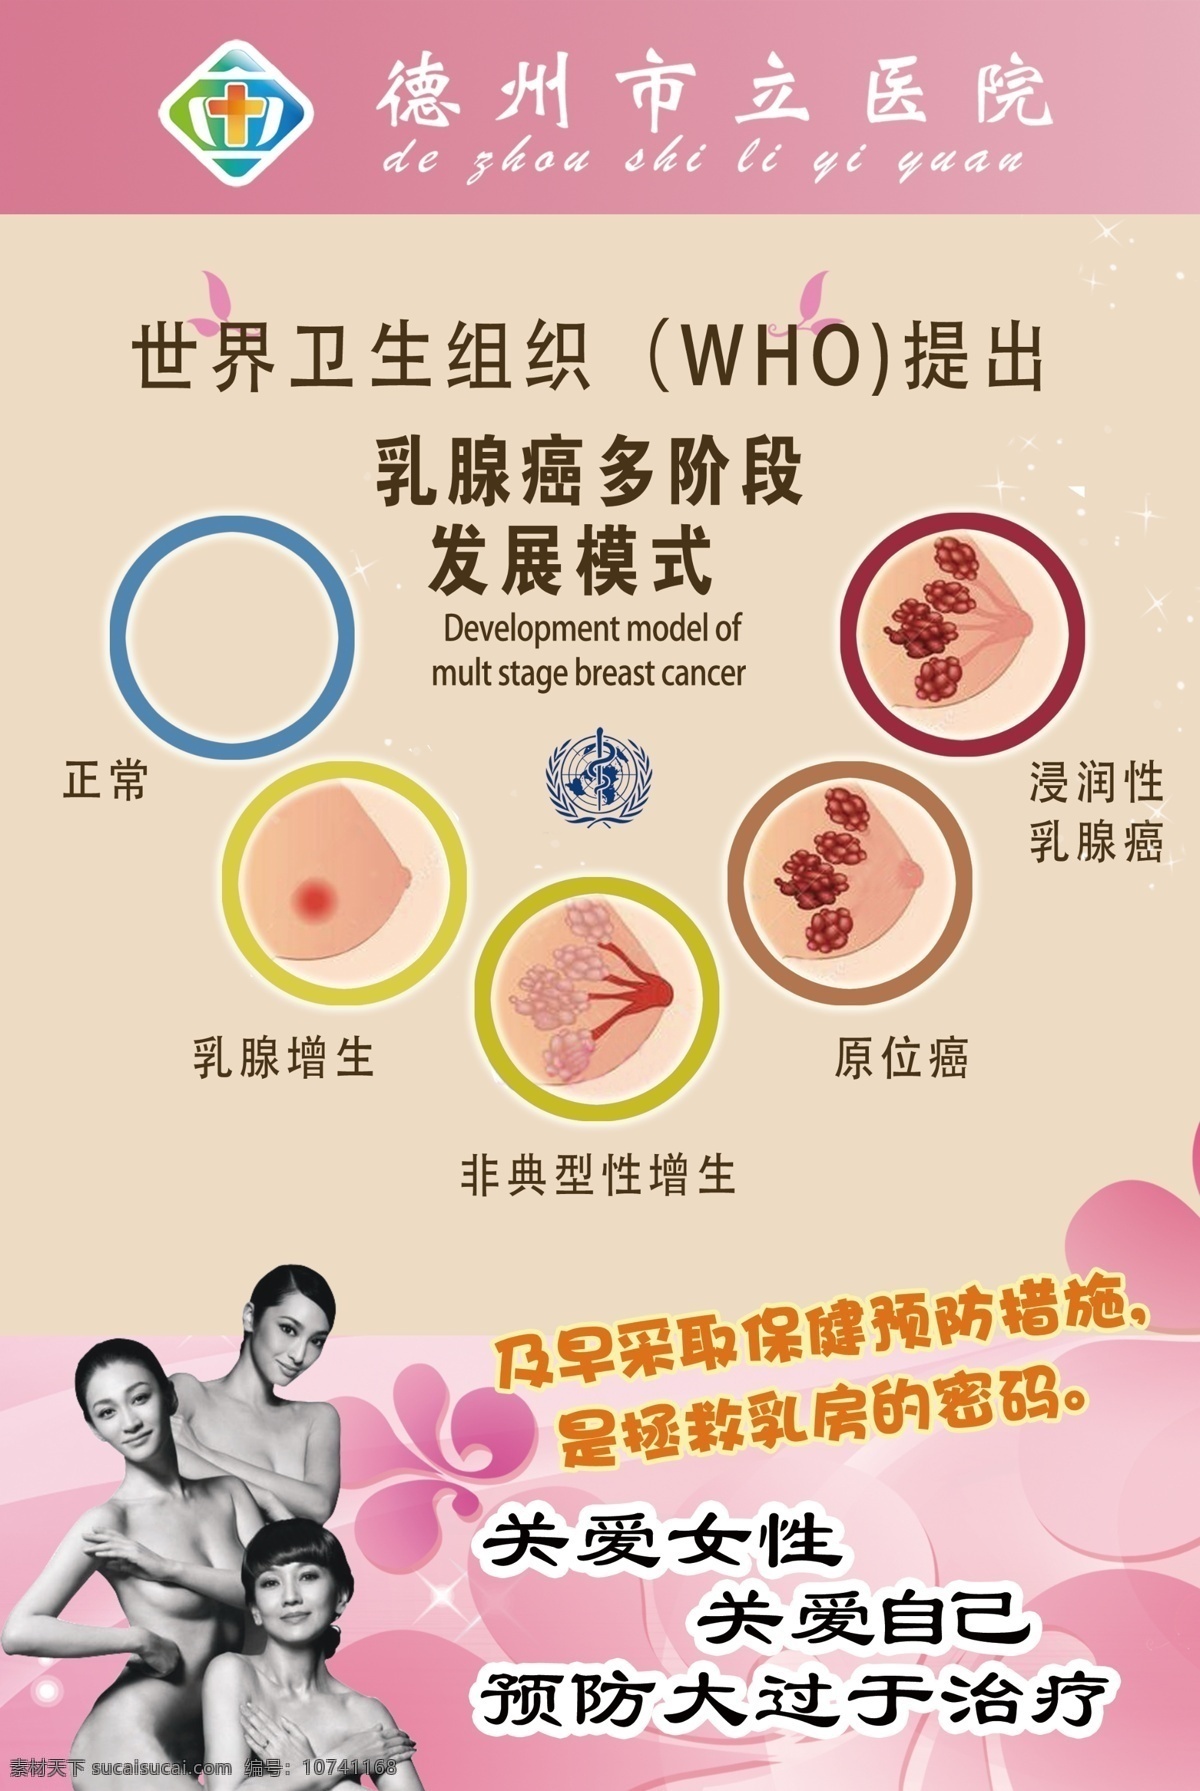 乳腺癌 多发阶段 世界组织 关爱女性 关爱自己 预防大于治疗 生活百科 医疗保健